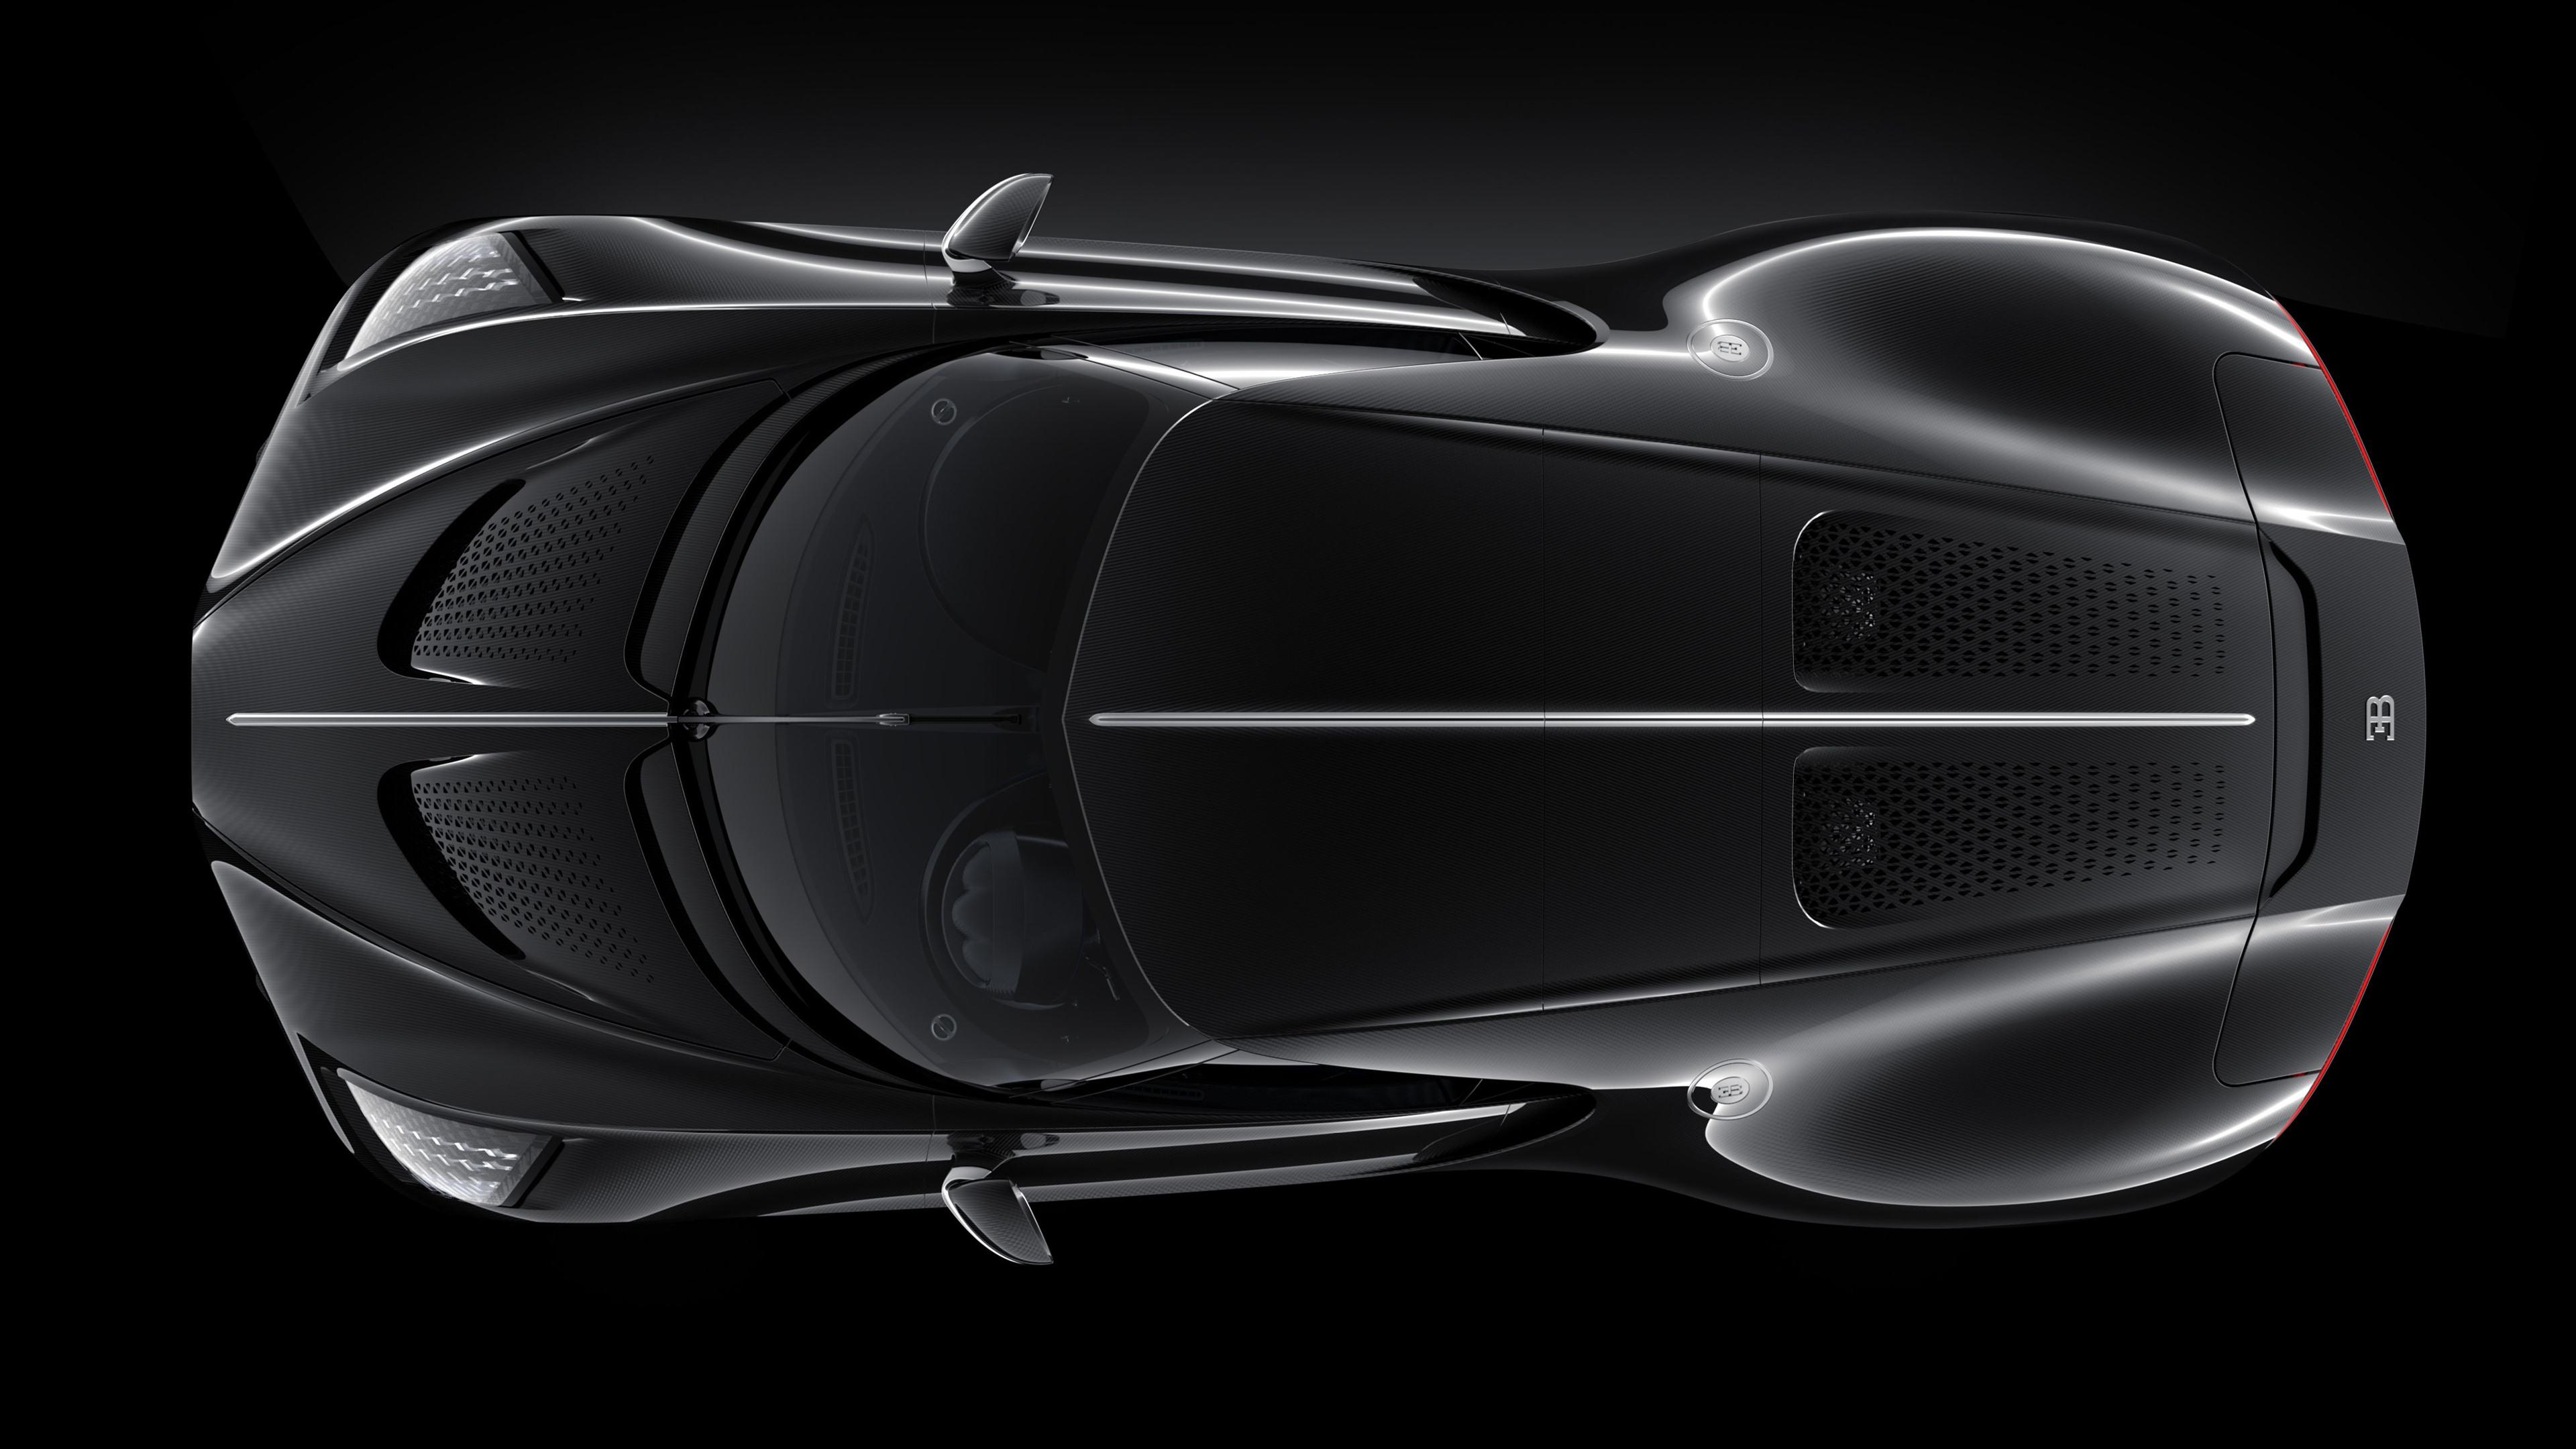 4K Bugatti La Voiture Noire Wallpaper Full HD 40060